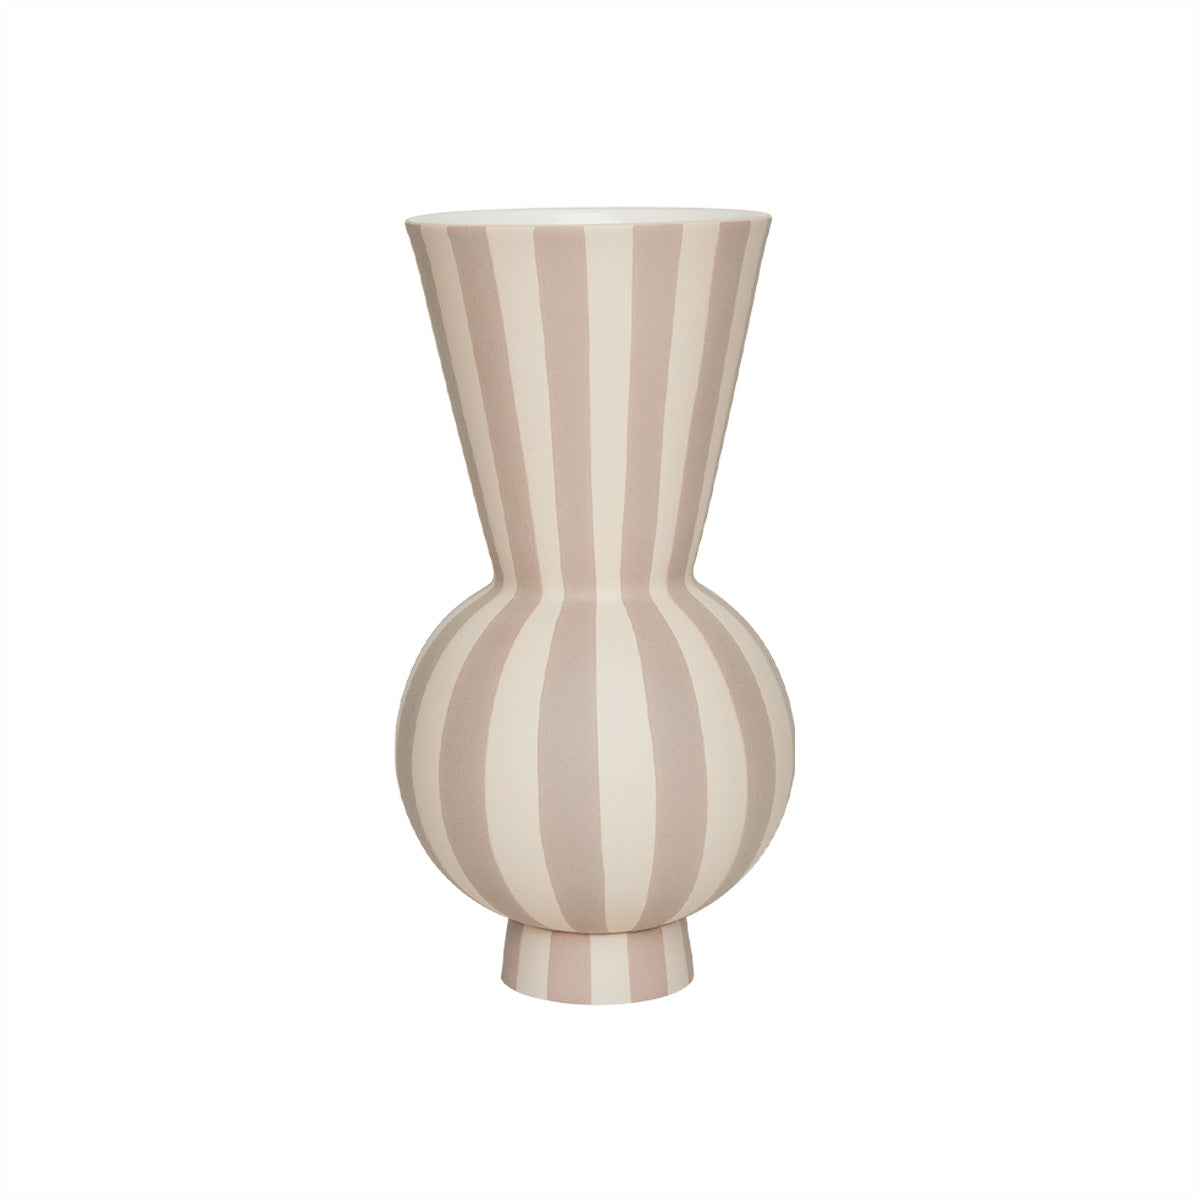 OYOY LIVING Toppu Vase - Round Vase